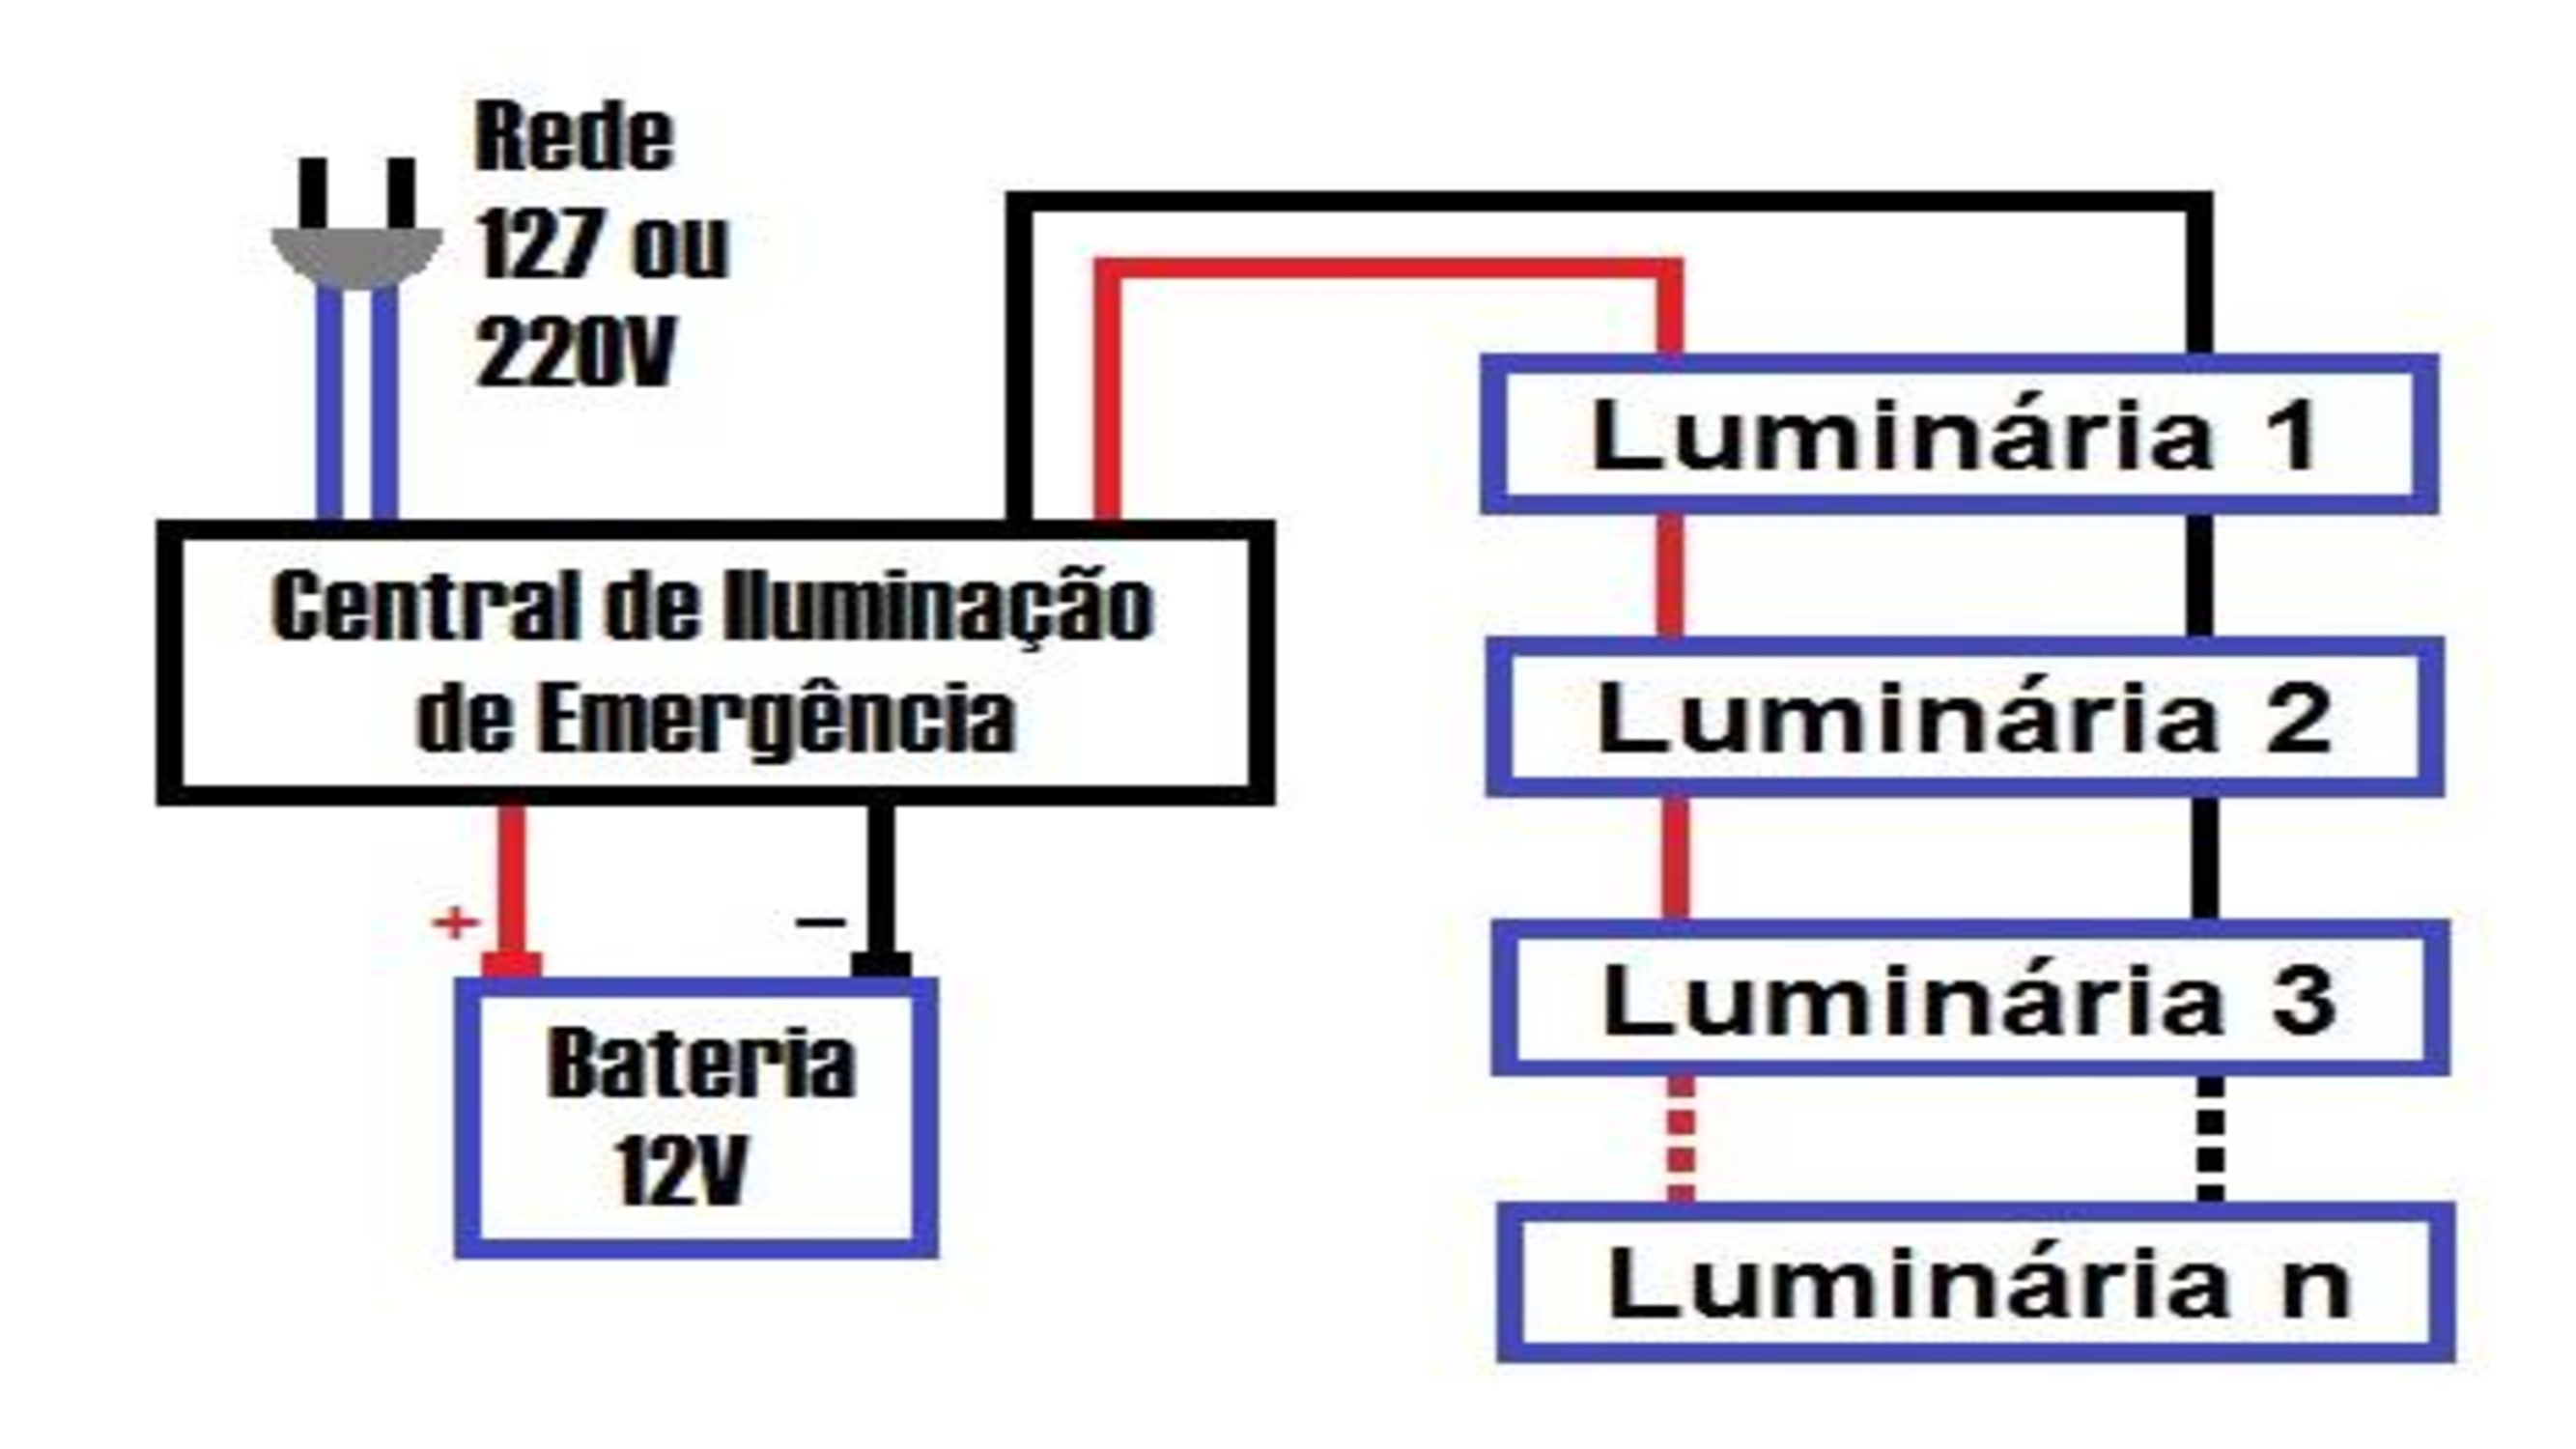 Figura 2 - Diagrama do bloco autônomo convertido para 12V como luminária, conectada a uma central de iluminação de emergência.